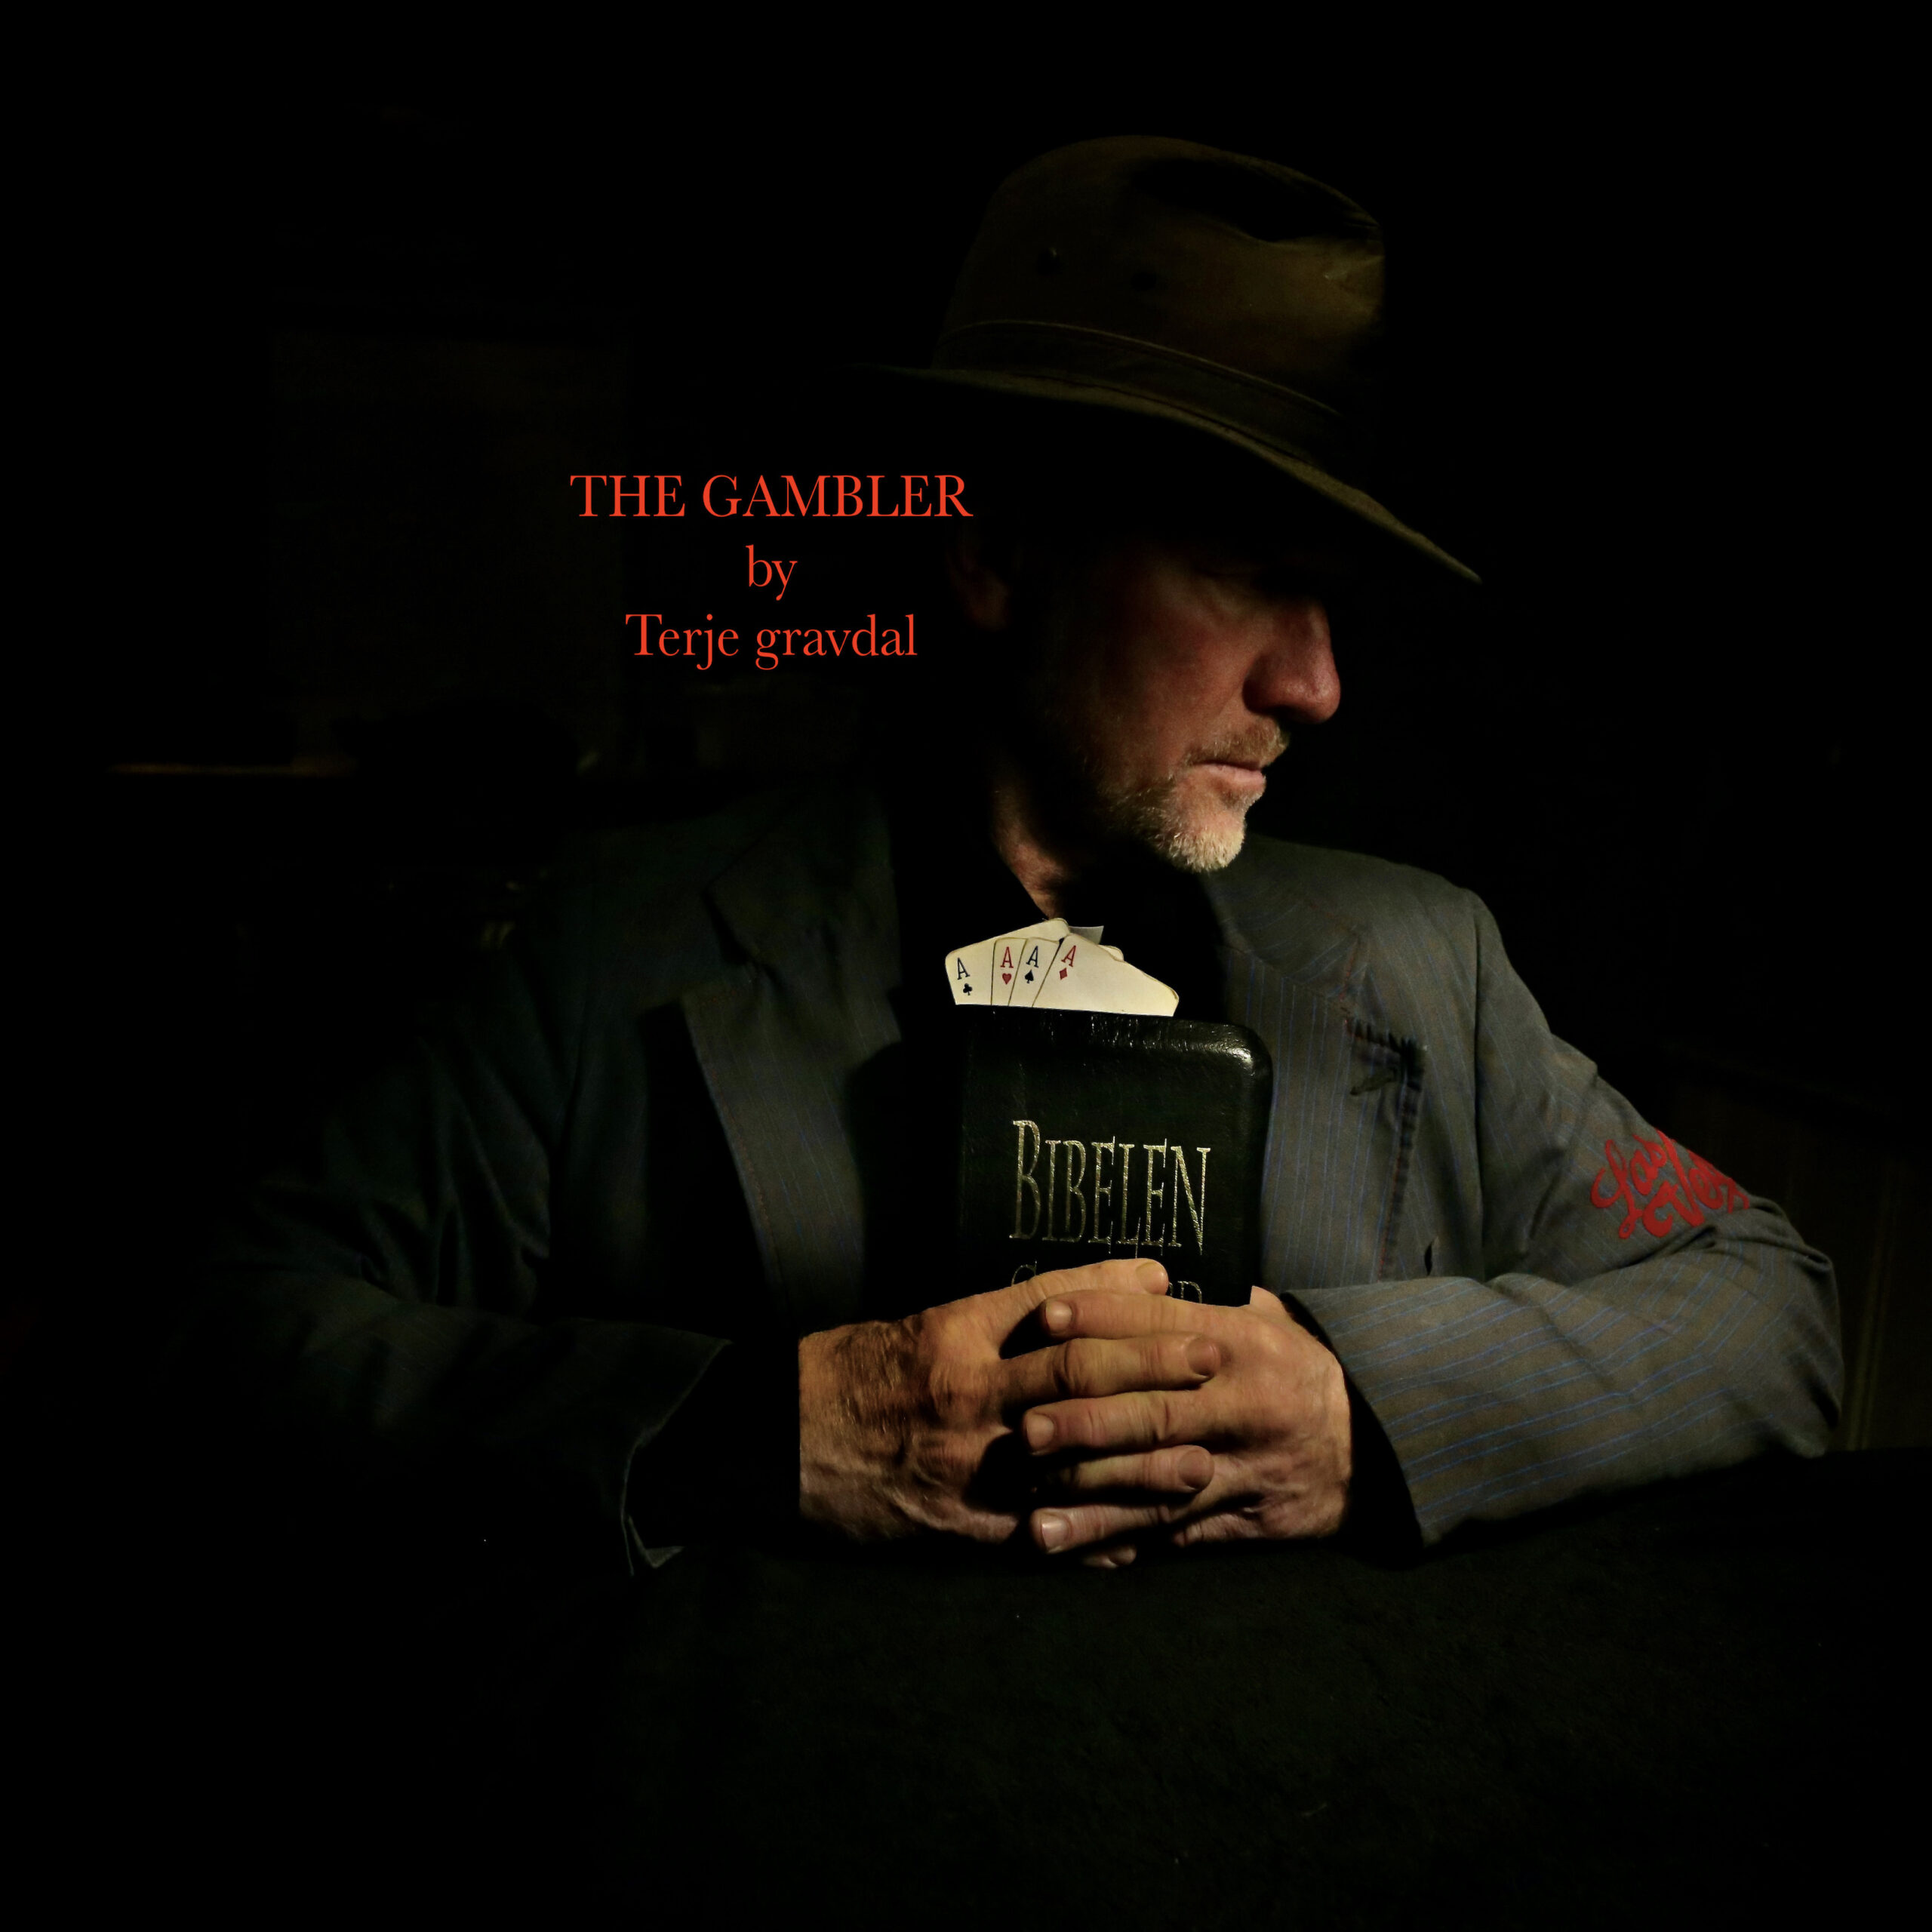  Explorando emociones y compromisos con el EP “The Gambler” de Terje Gravdal